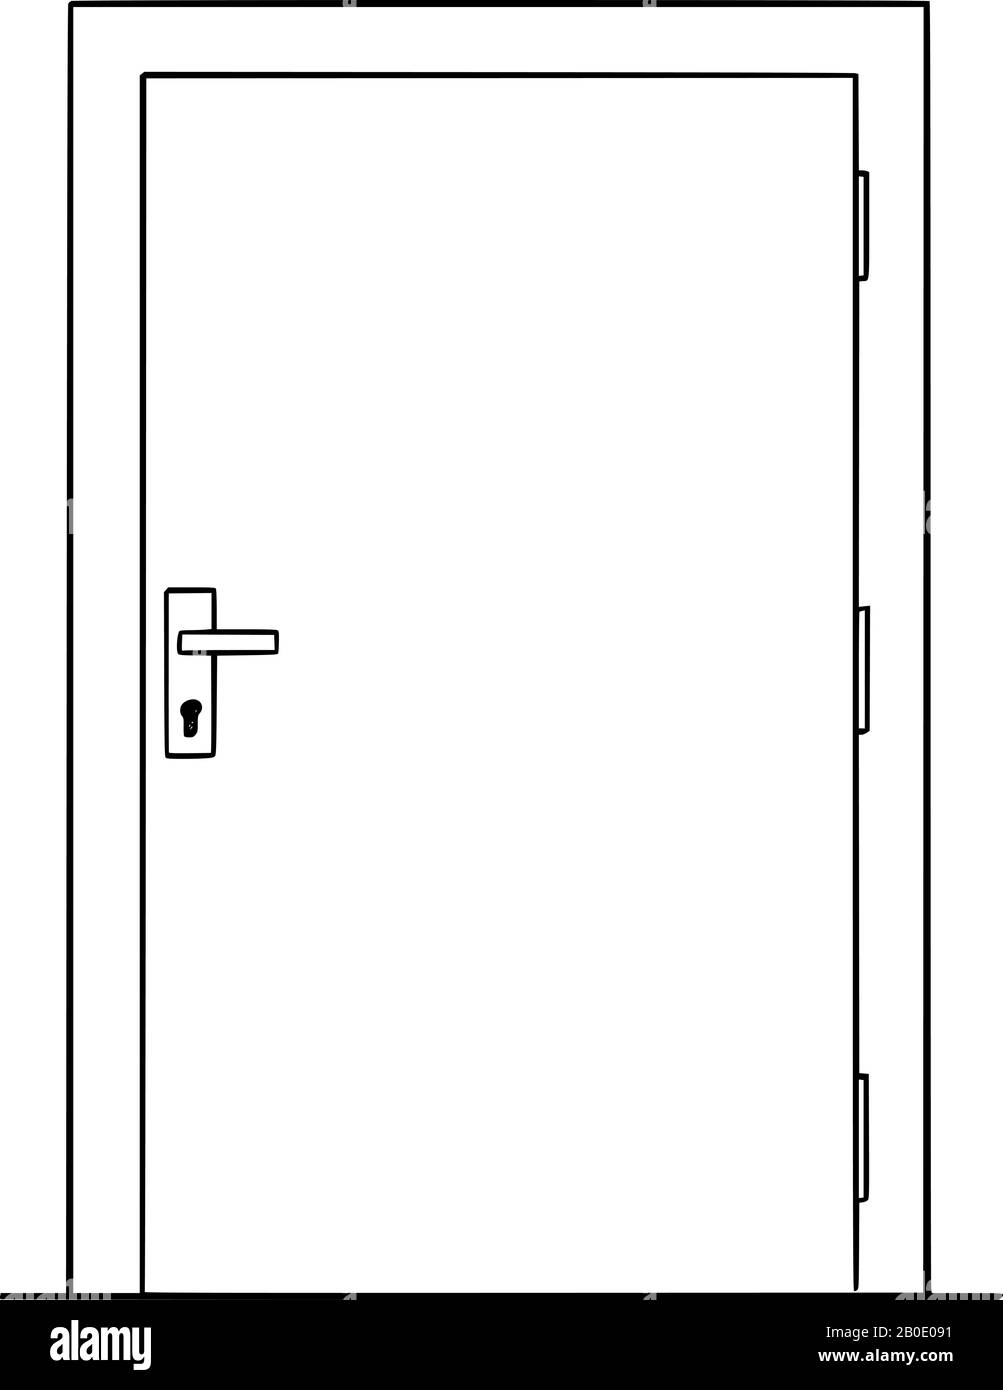 Dessin vectoriel illustration conceptuelle d'une porte simple fermée ou  verrouillée Image Vectorielle Stock - Alamy